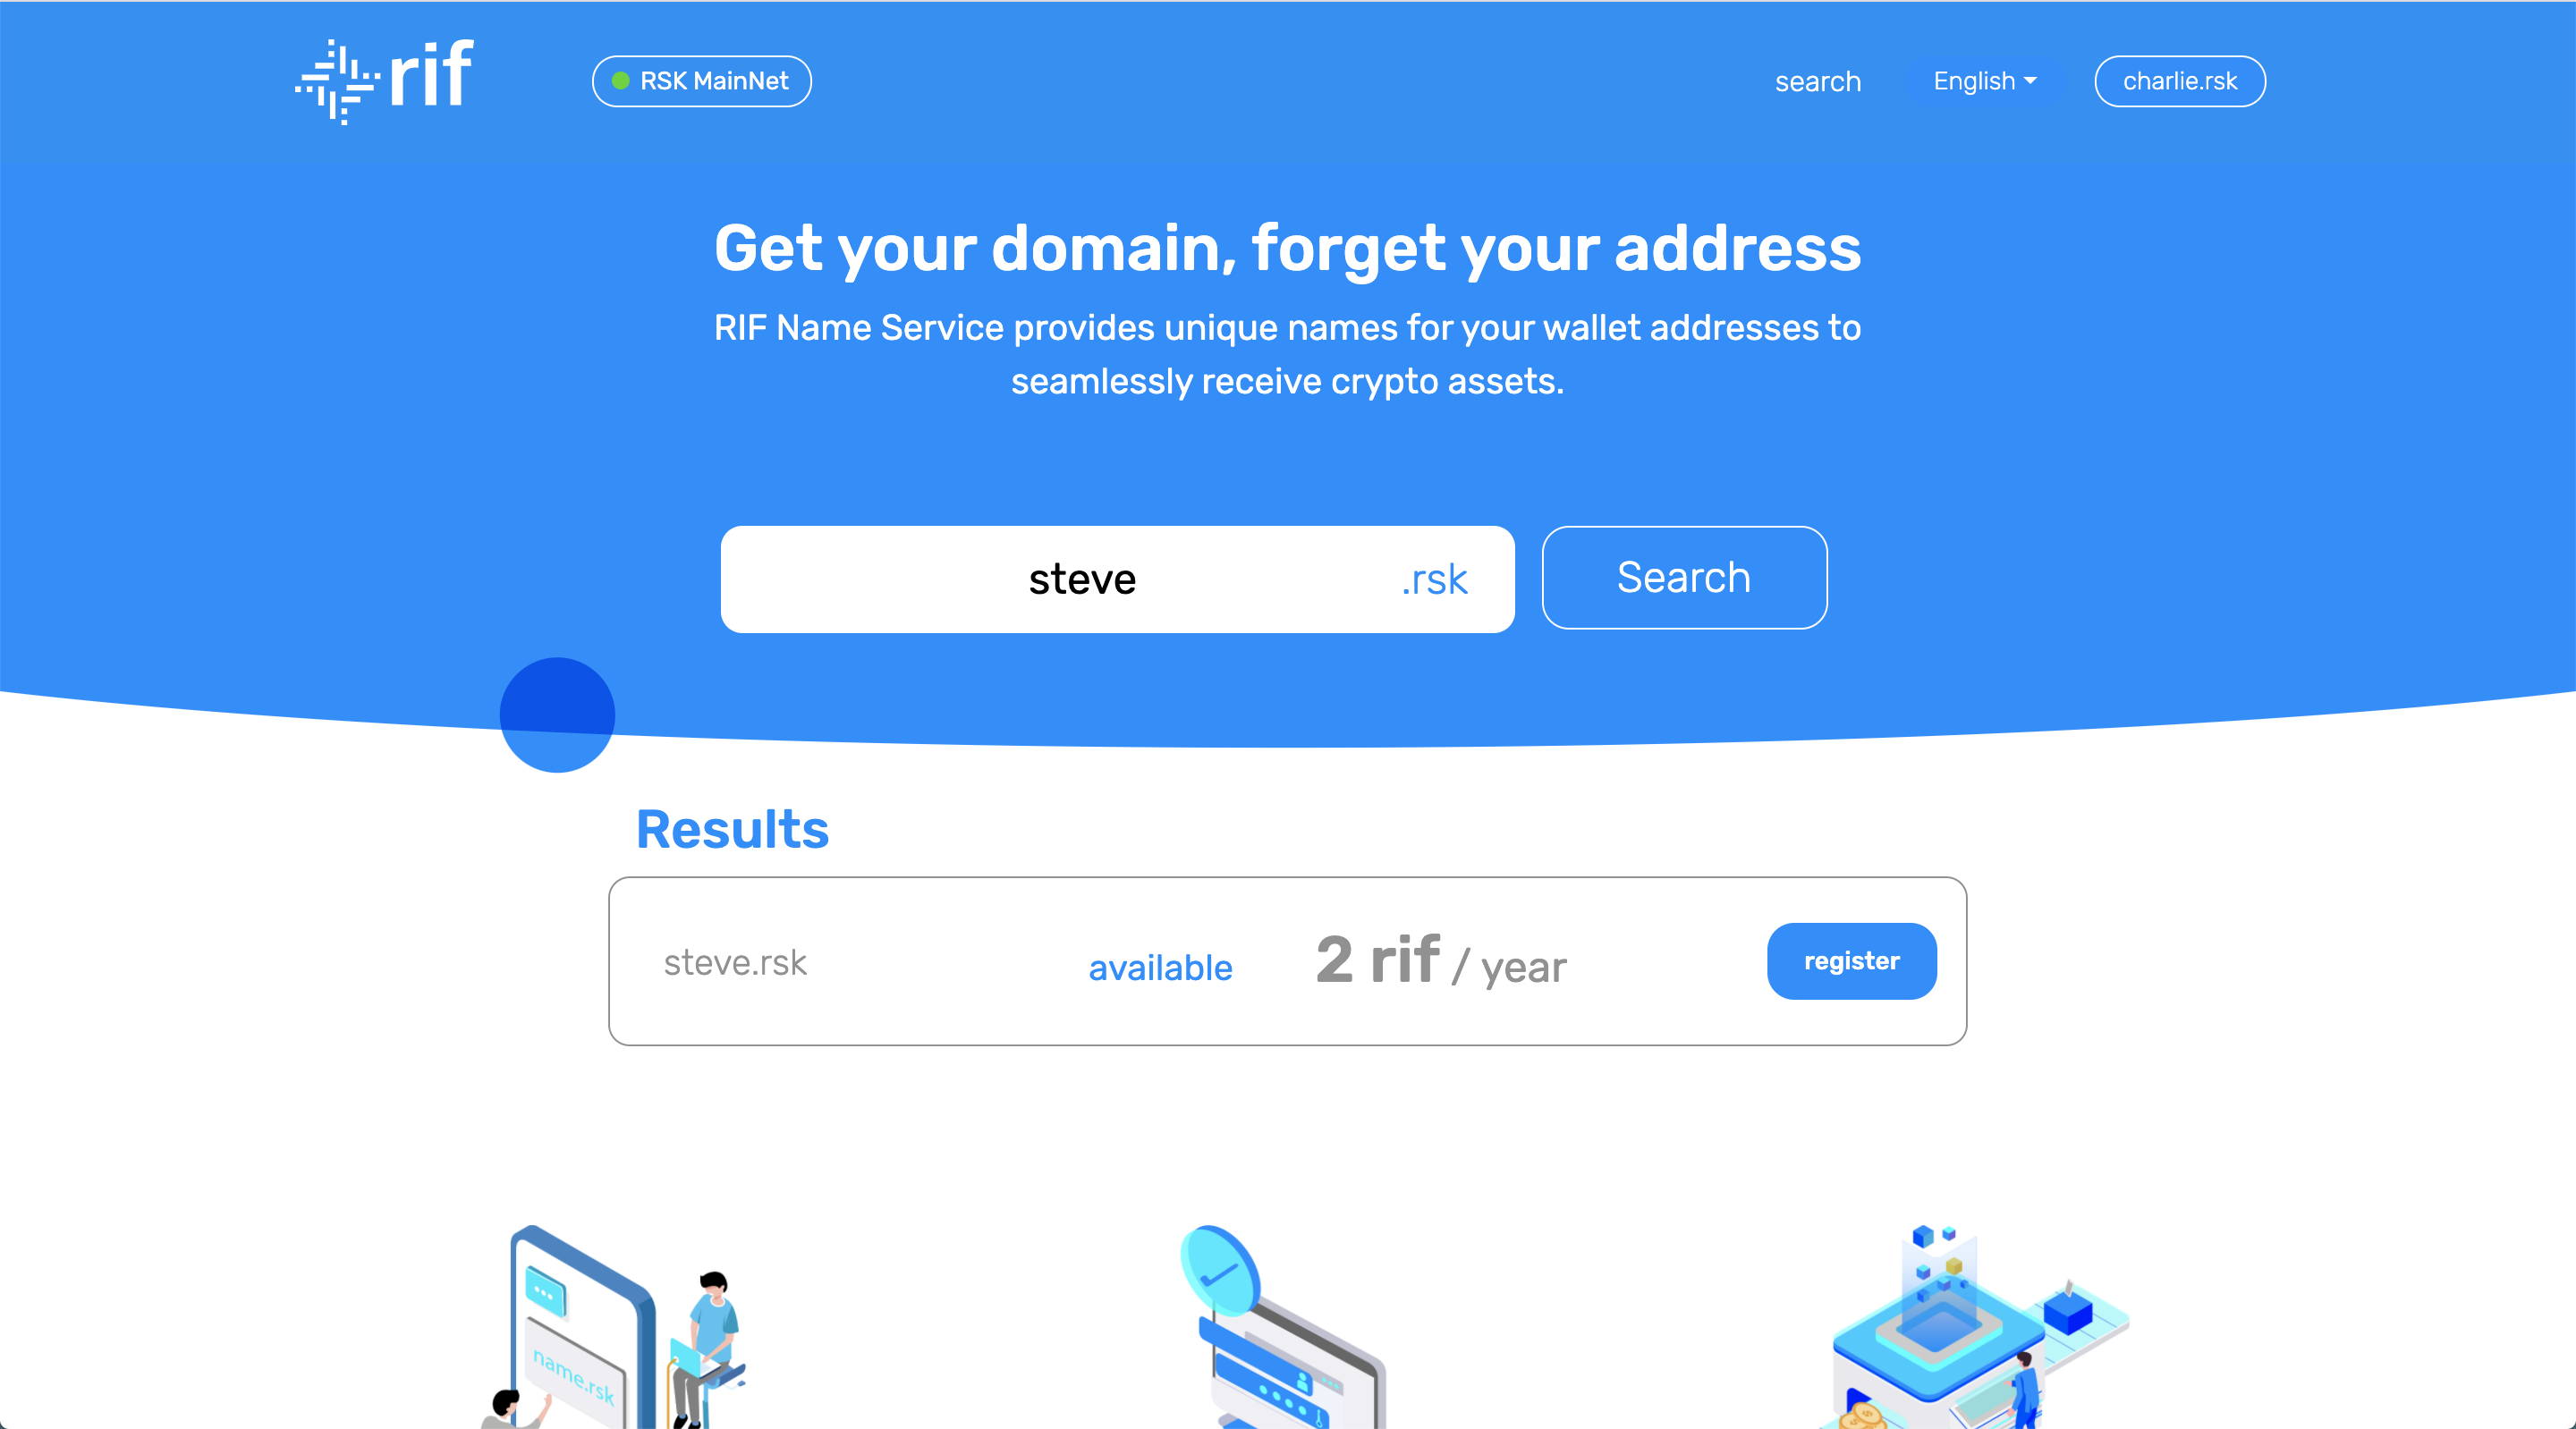 UserGuide - Register domain